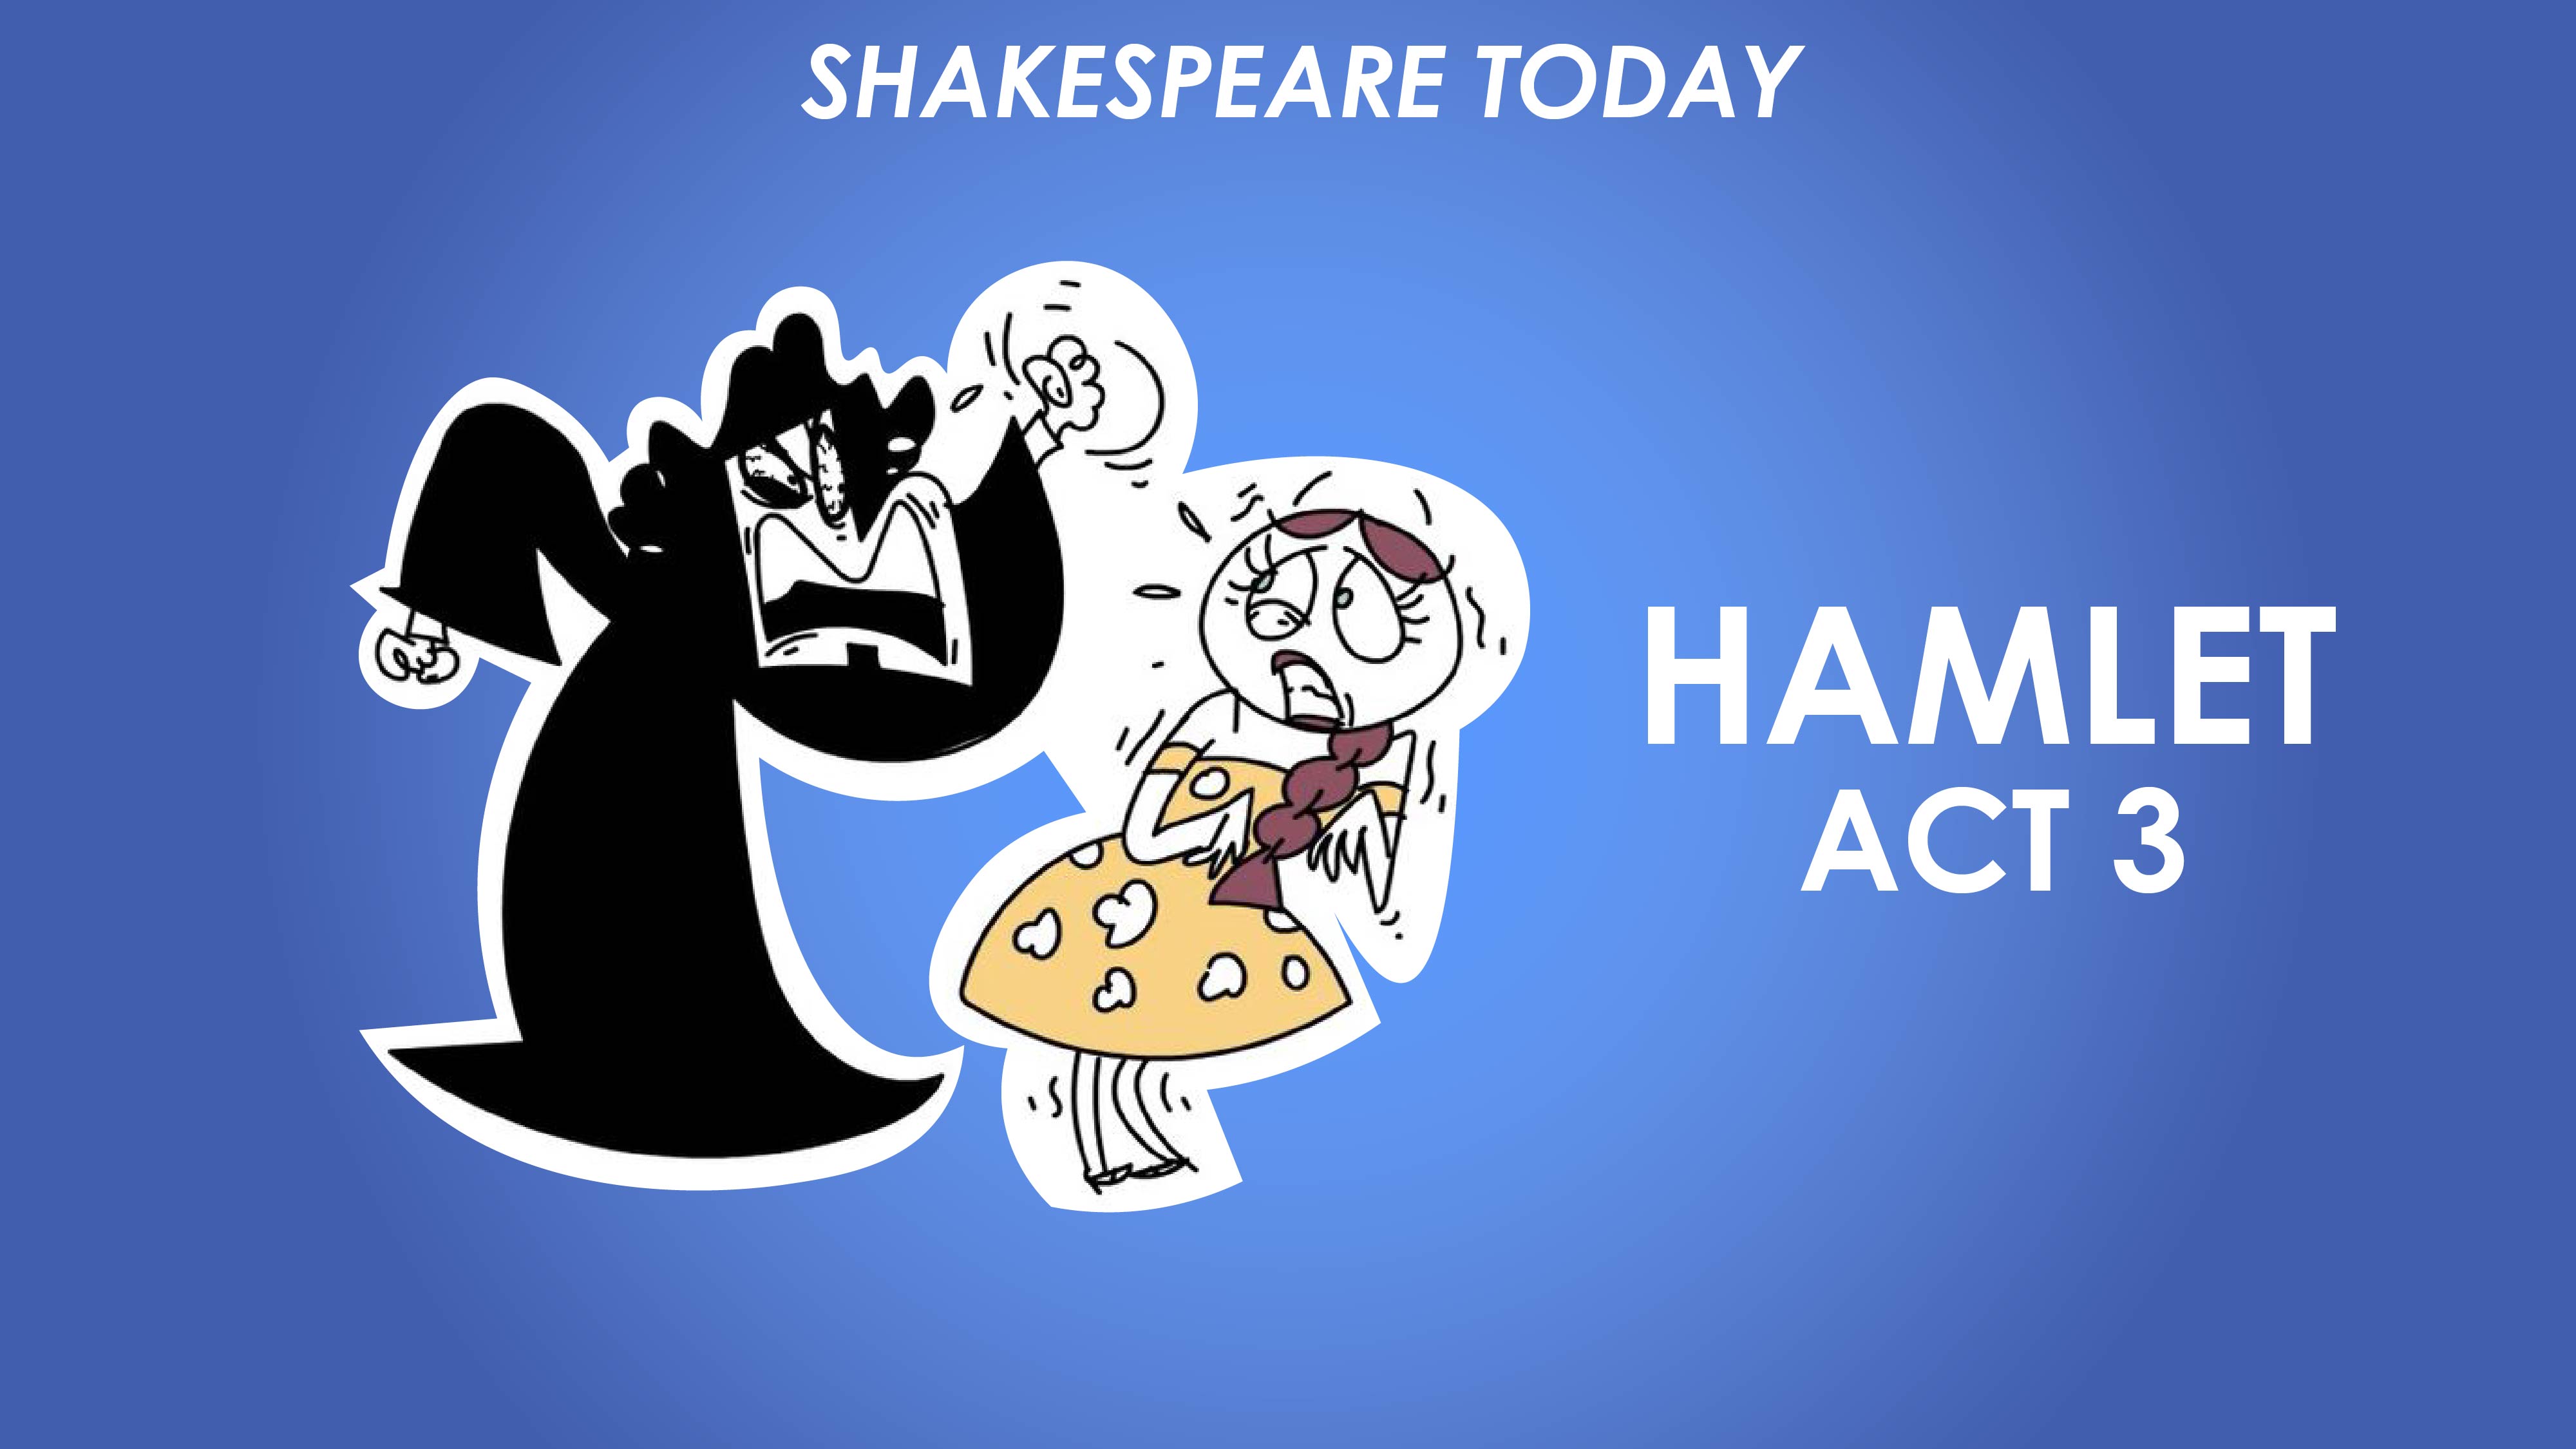 Hamlet Act 3 Summary - Shakespeare Today Series